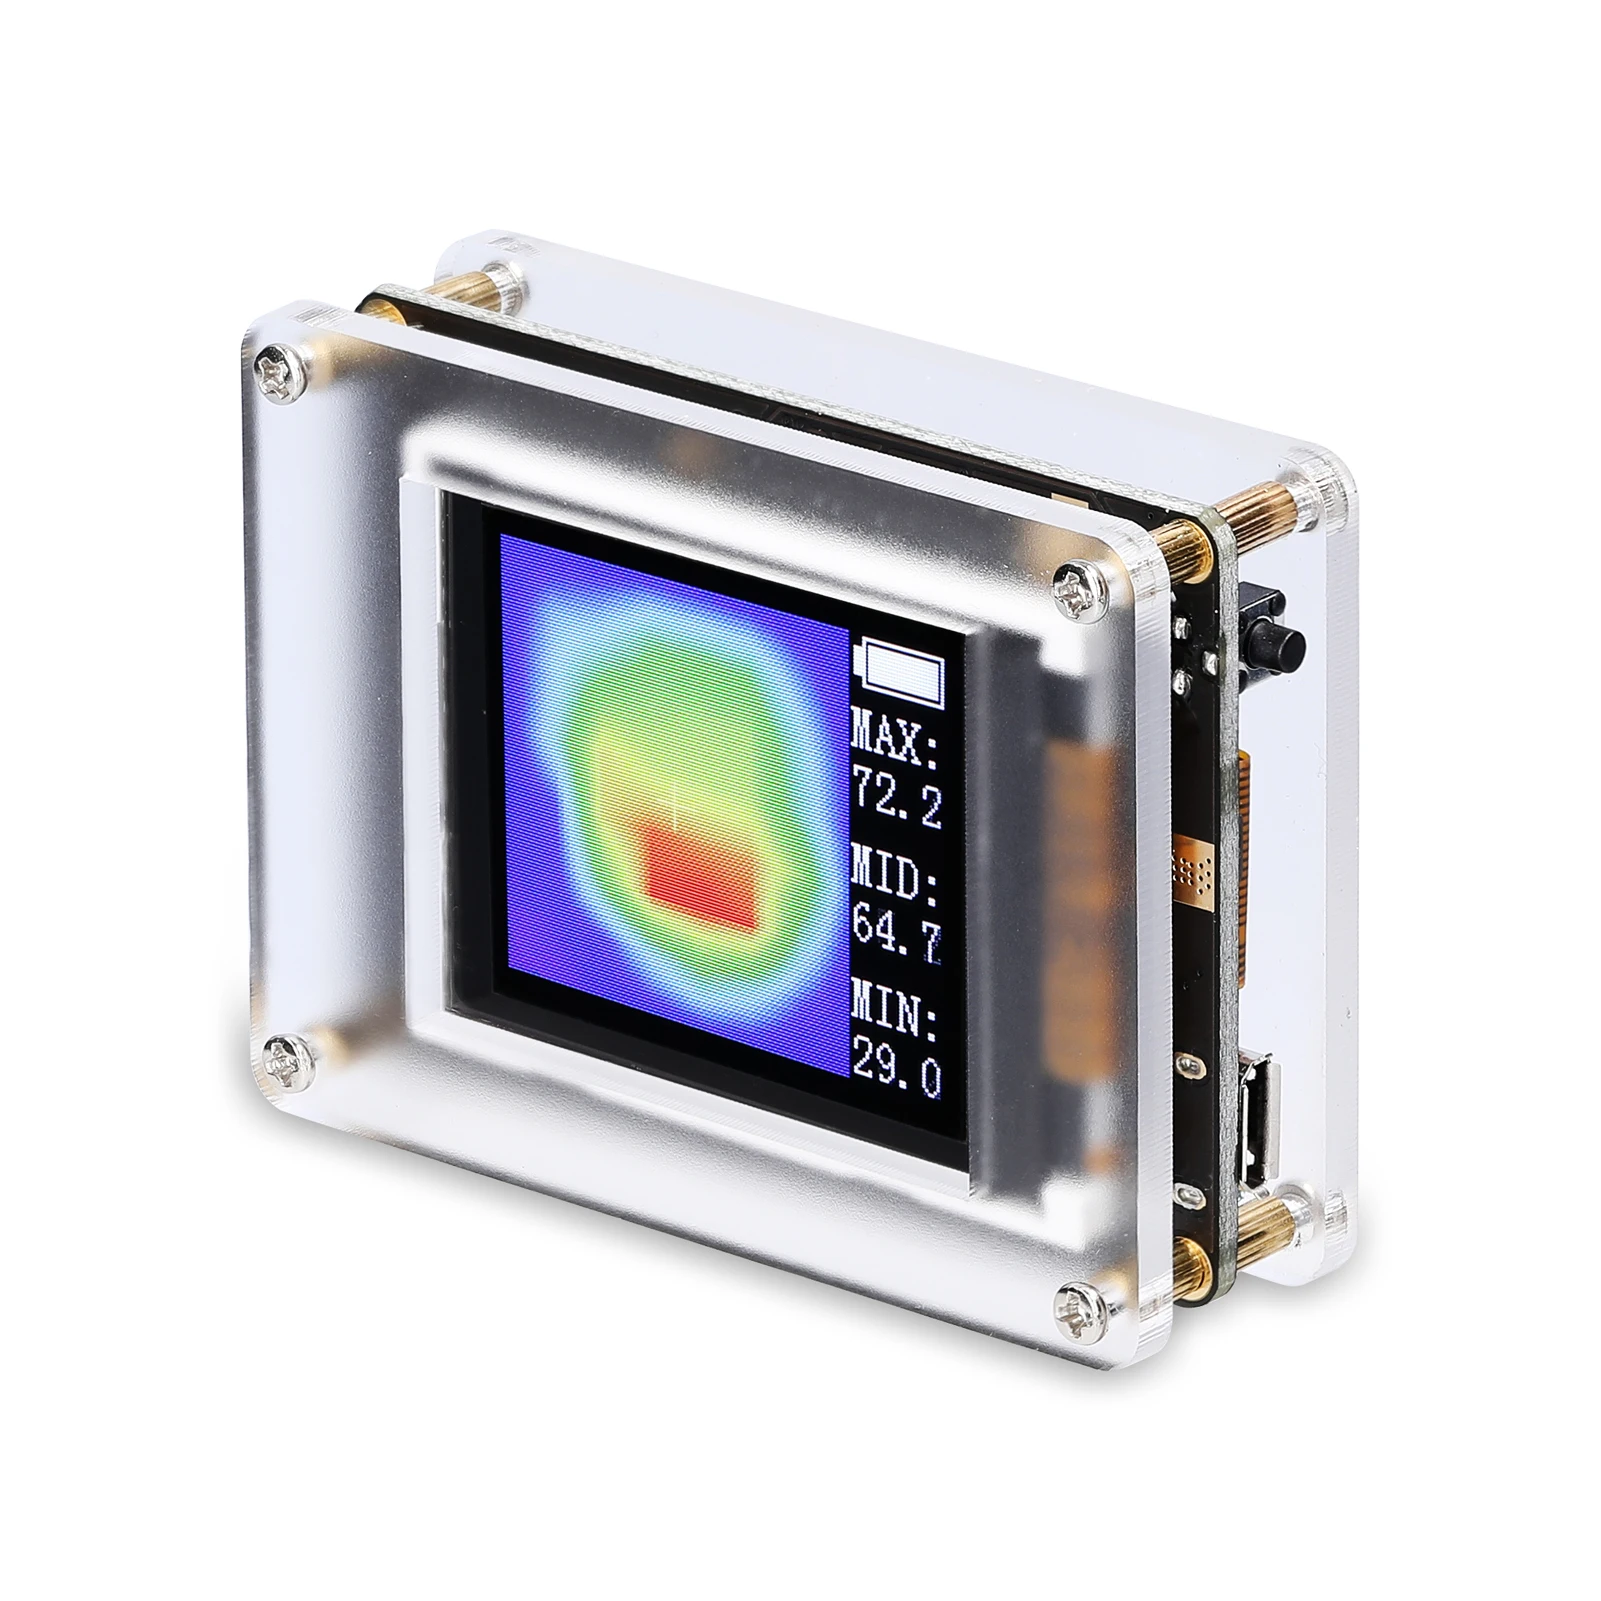 

Простой портативный инфракрасный тепловизор amg8833 _ CP с TFT-дисплеем 1,8 дюйма, температурные датчики, отображение максимальной и минимальной т...